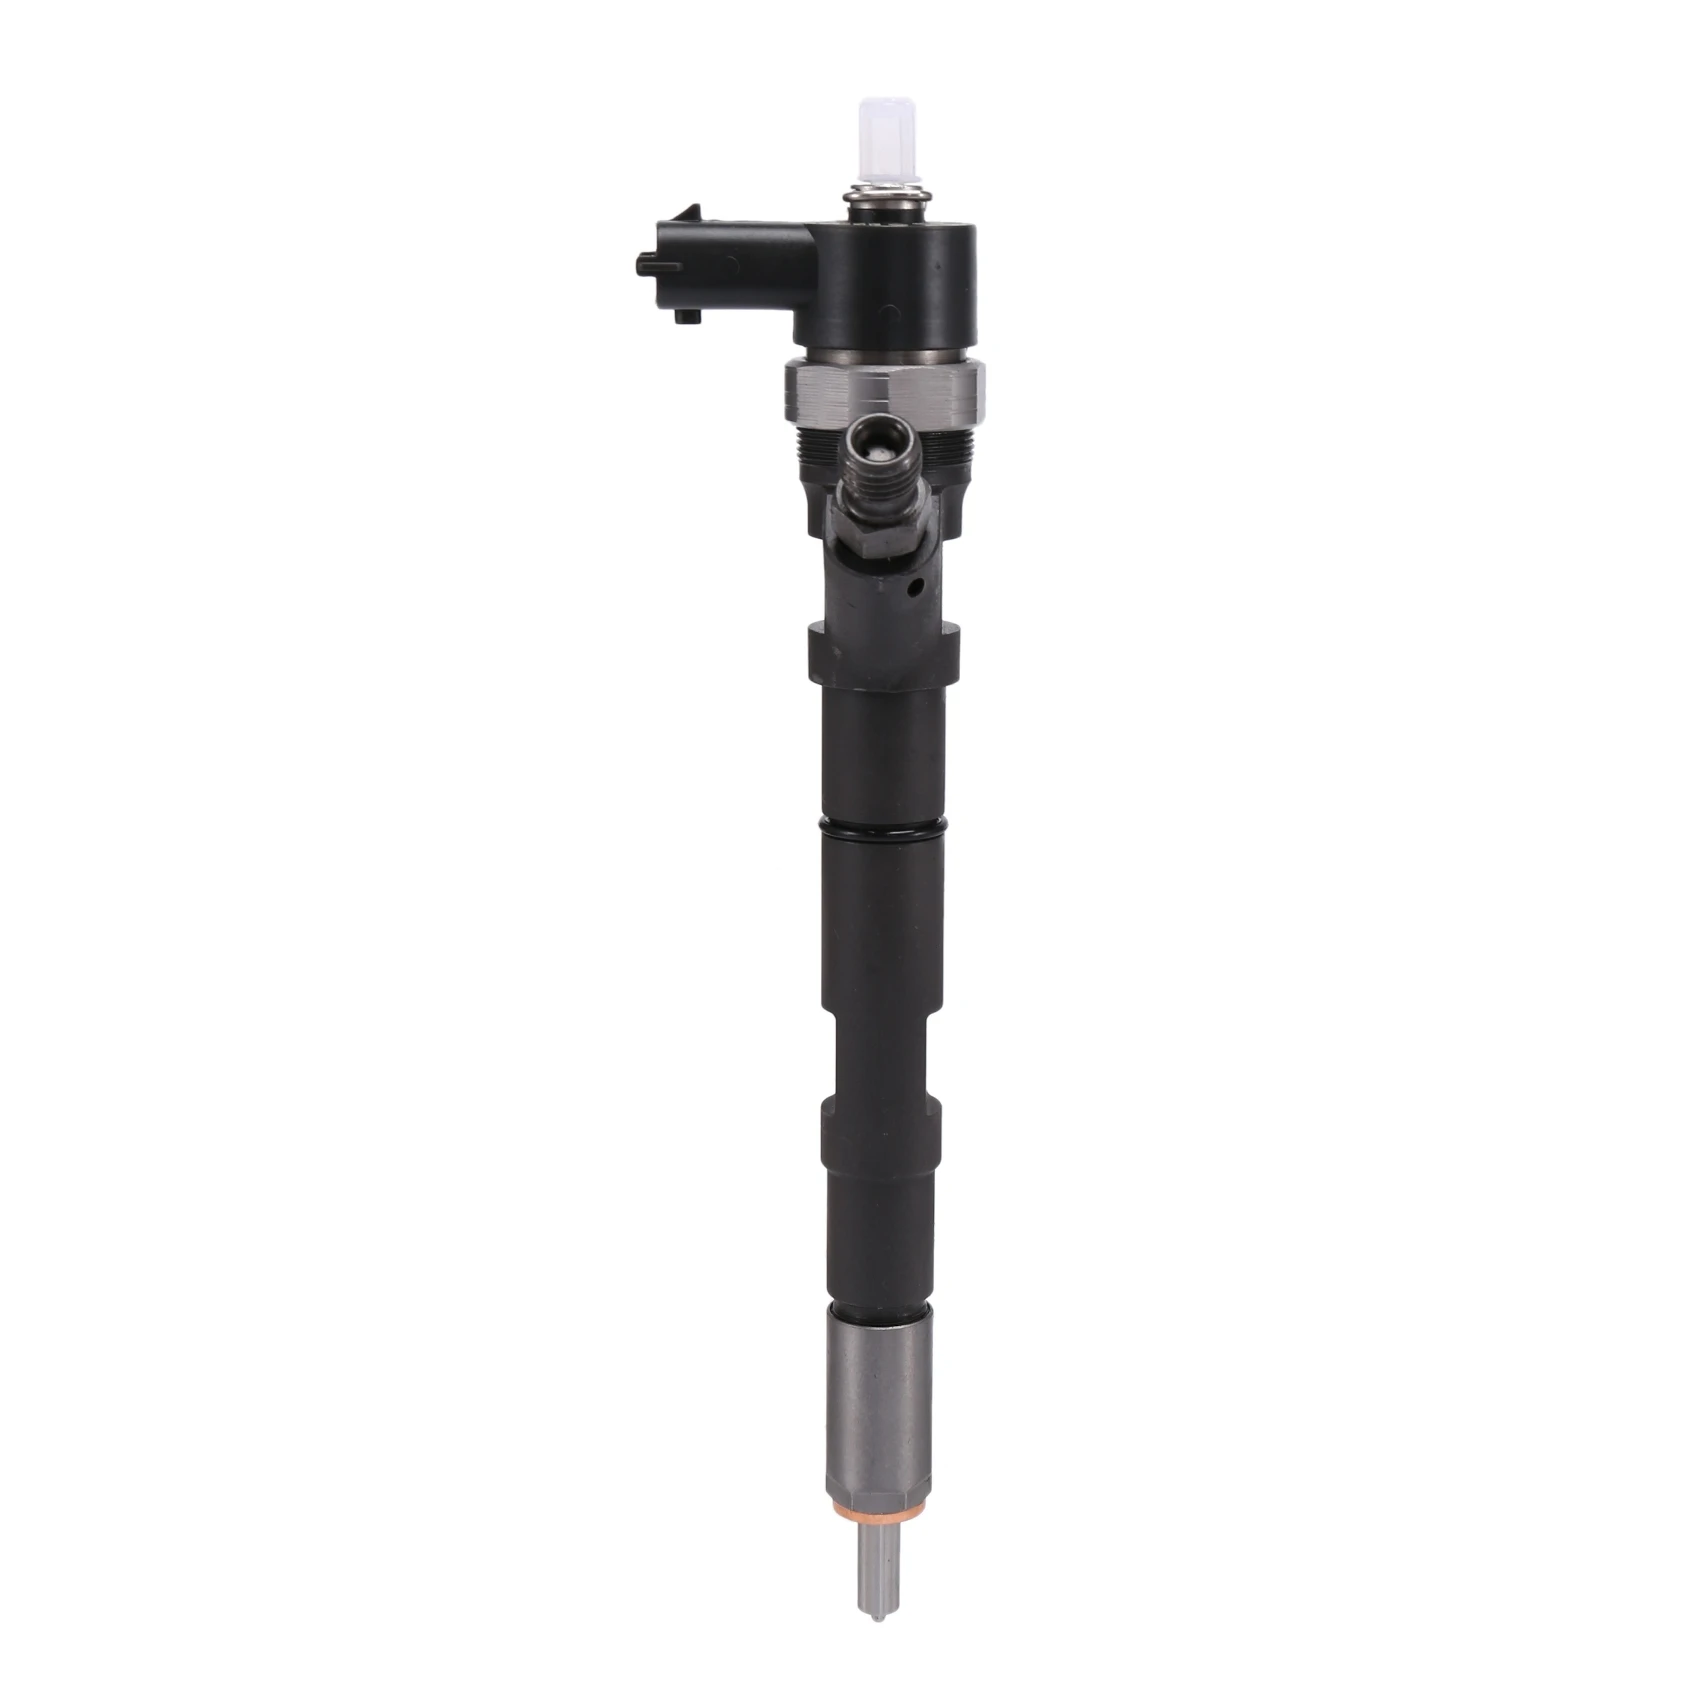 

New CRDI-Diesel Fuel Injector Nozzle 33800-4A500 0445110275 for Hyundai Starex H1 I800 ILoad / KIA Sorento 2.5 VGT